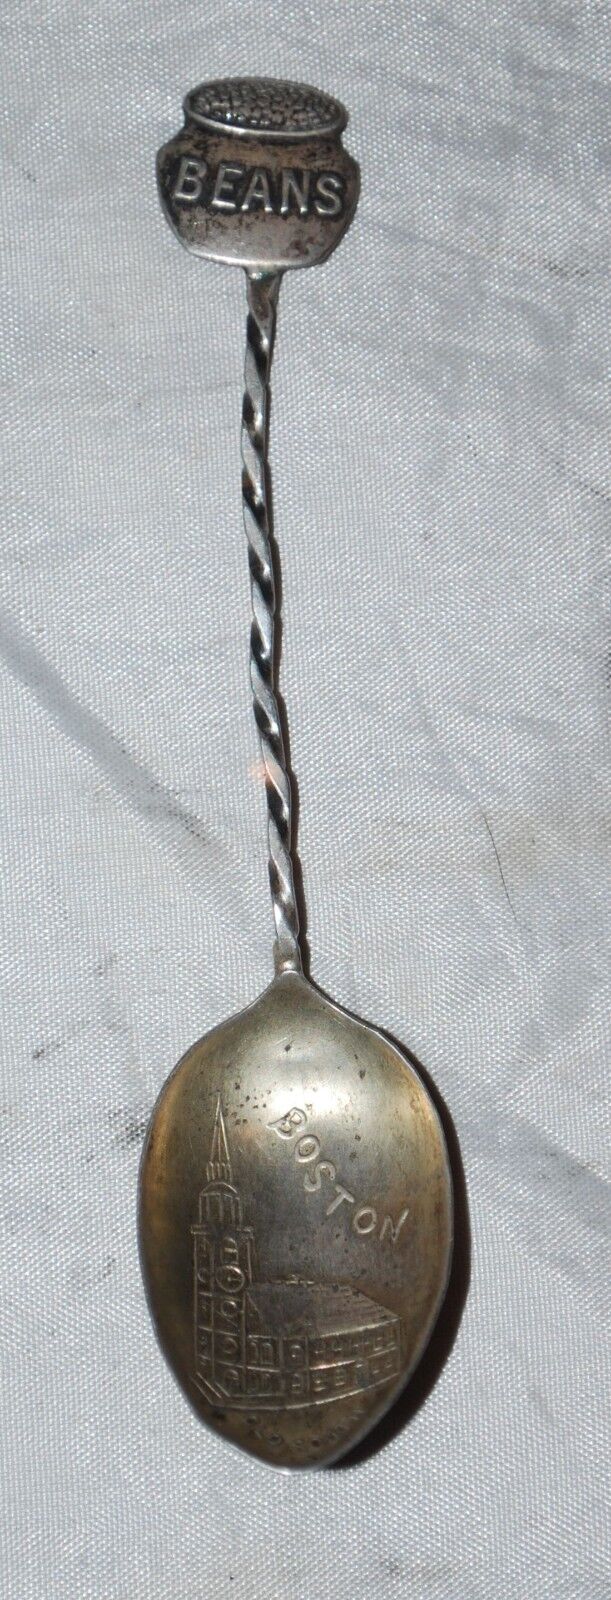 Vintage Sterling Boston Bean Pot Old South Souvenir Spoon